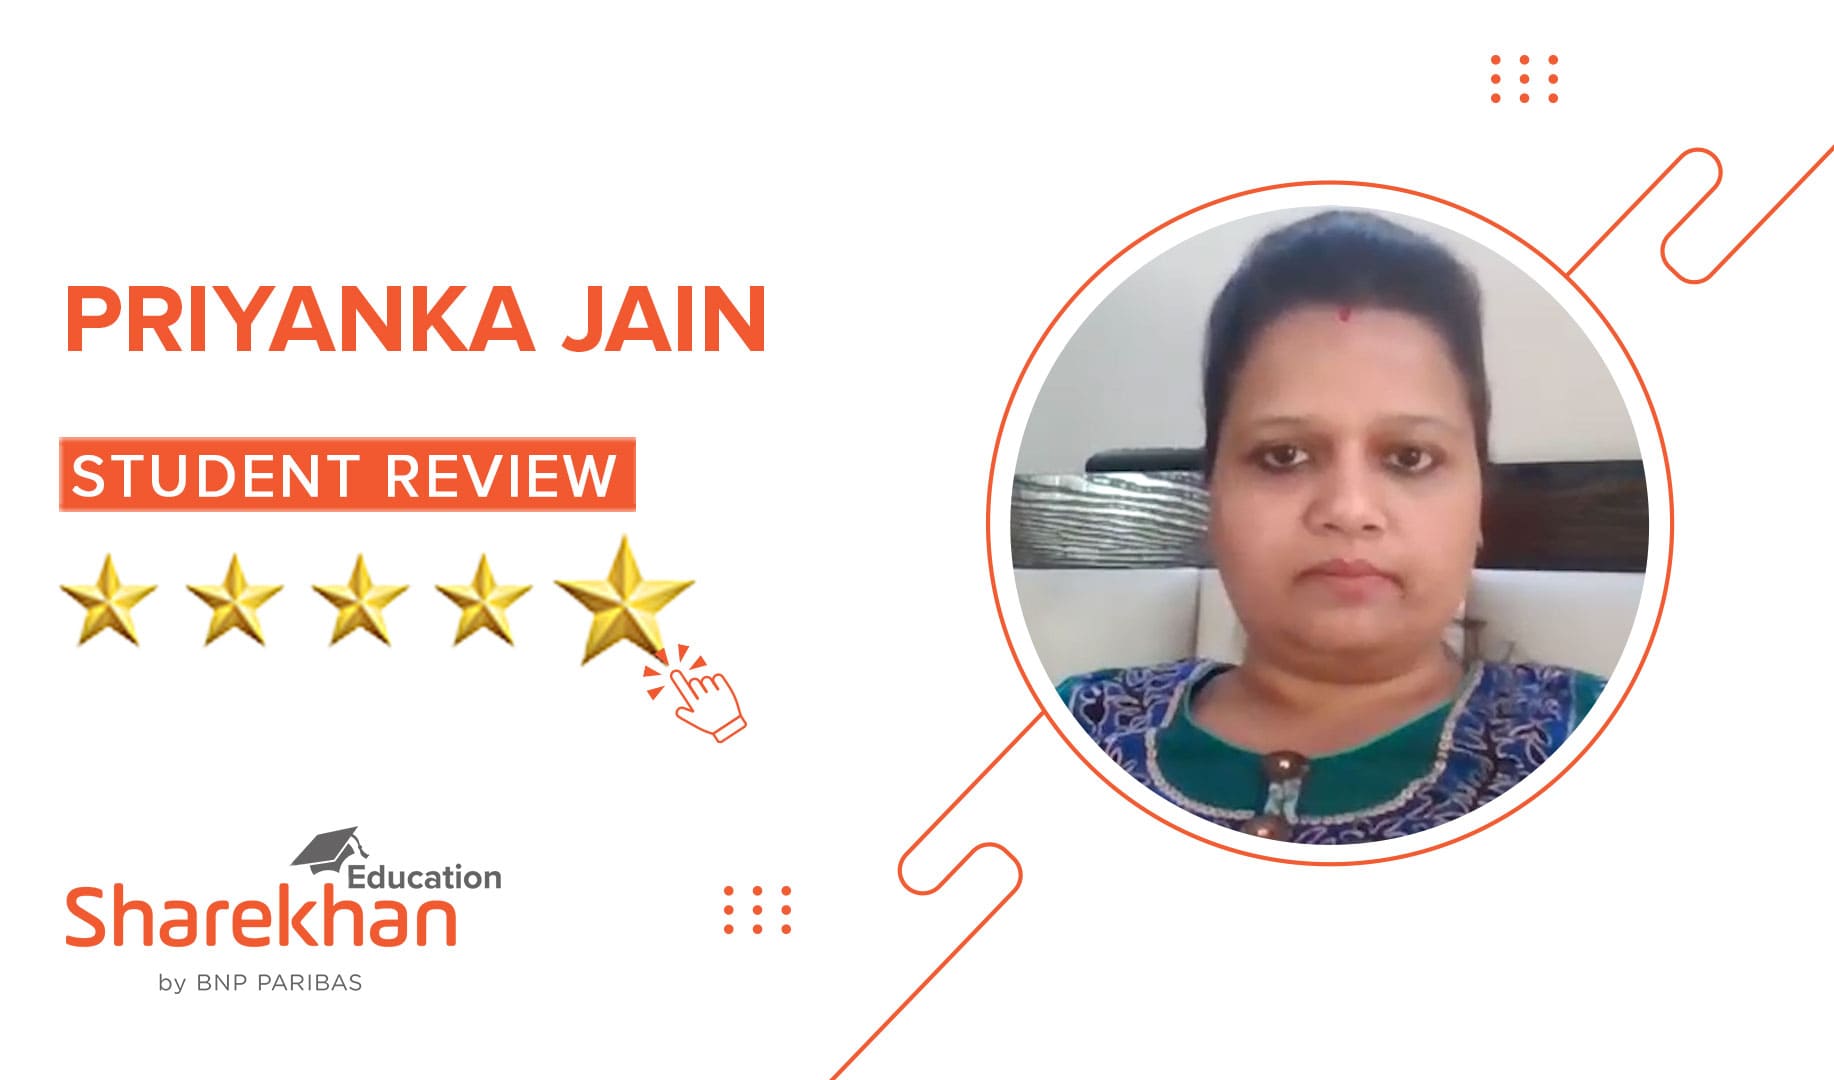 Sharekhan Education Review by Priyanka Jain